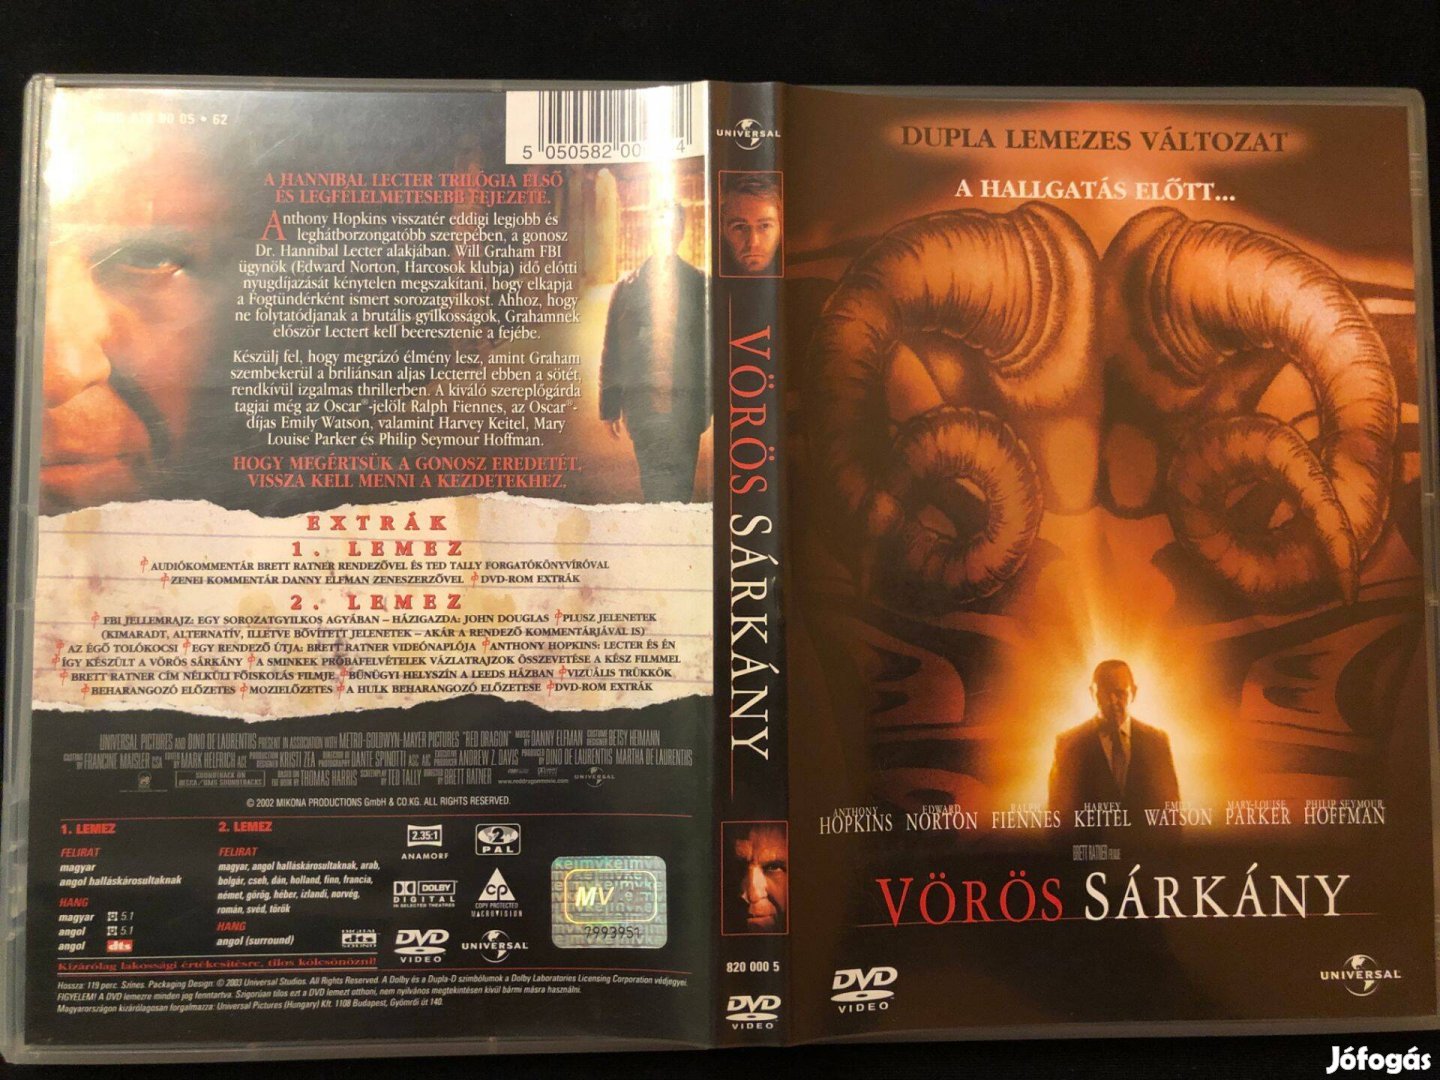 Vörös sárkány DVD (karcmentes, Anthony Hopkins, duplalemezes változat)